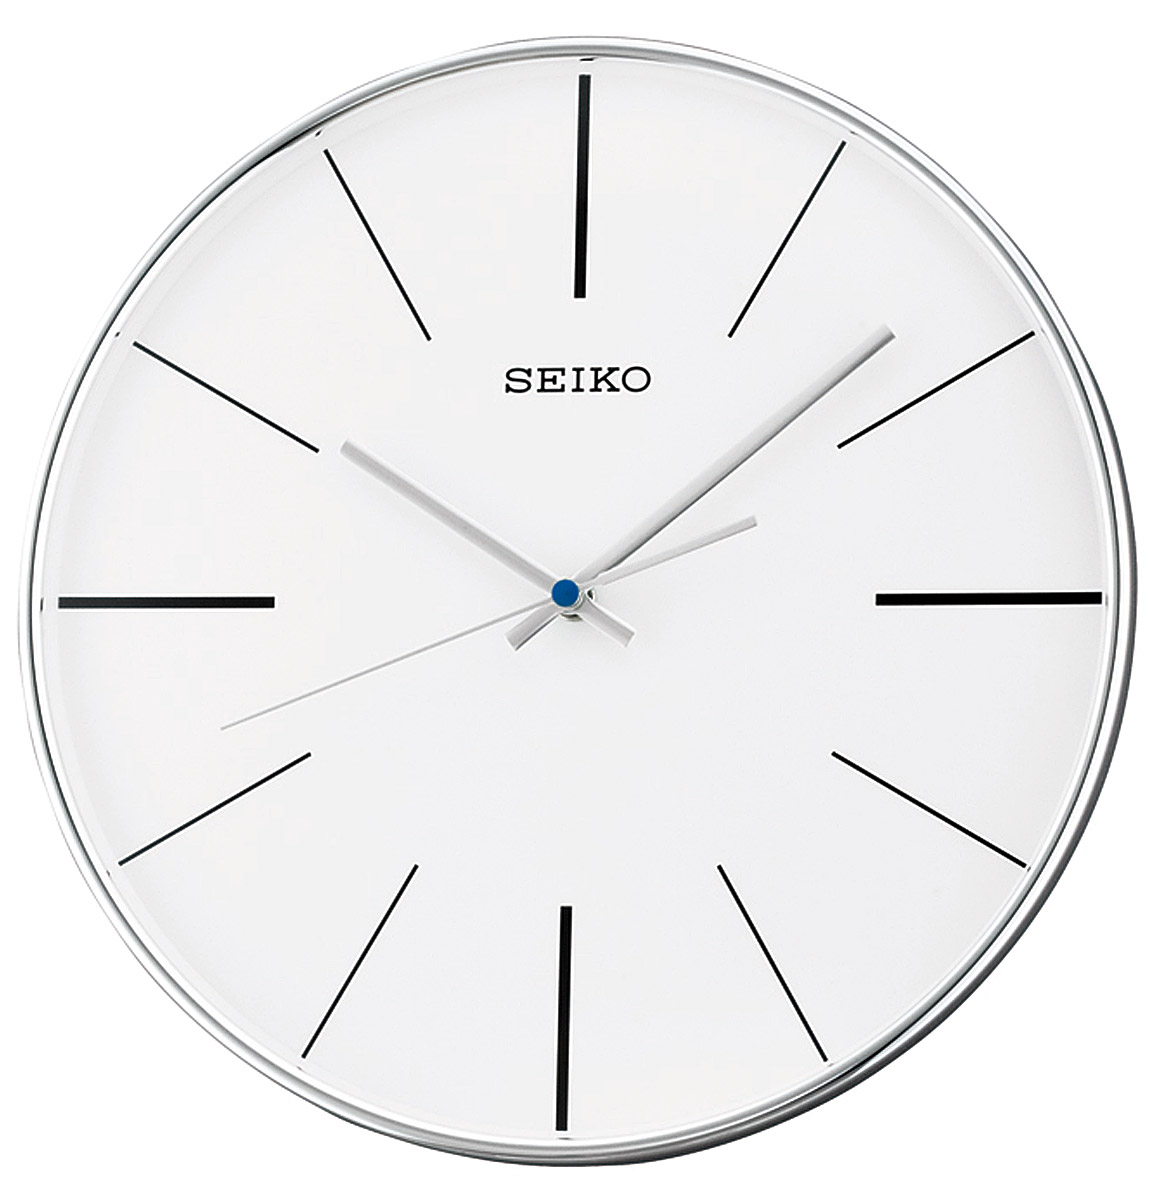 Циферблат панцирь. Настенные часы Seiko qxa634a. Часы настенные кварцевые Seiko qxa653k. Настенные часы Seiko qxa020s. Настенные часы Seiko qxa342s.